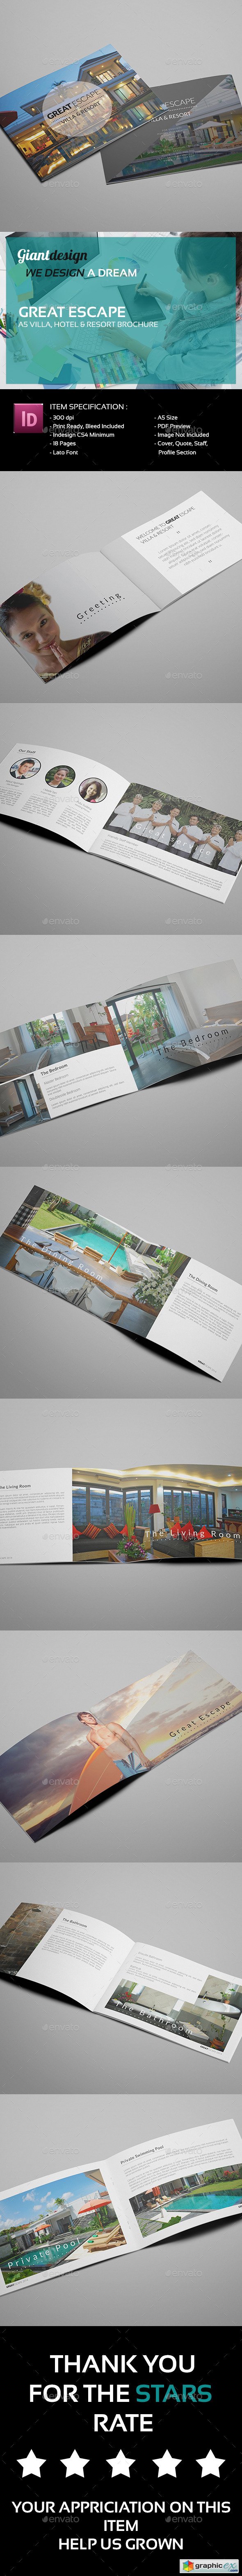 Great Escape - A5 Villa Resort Brochure